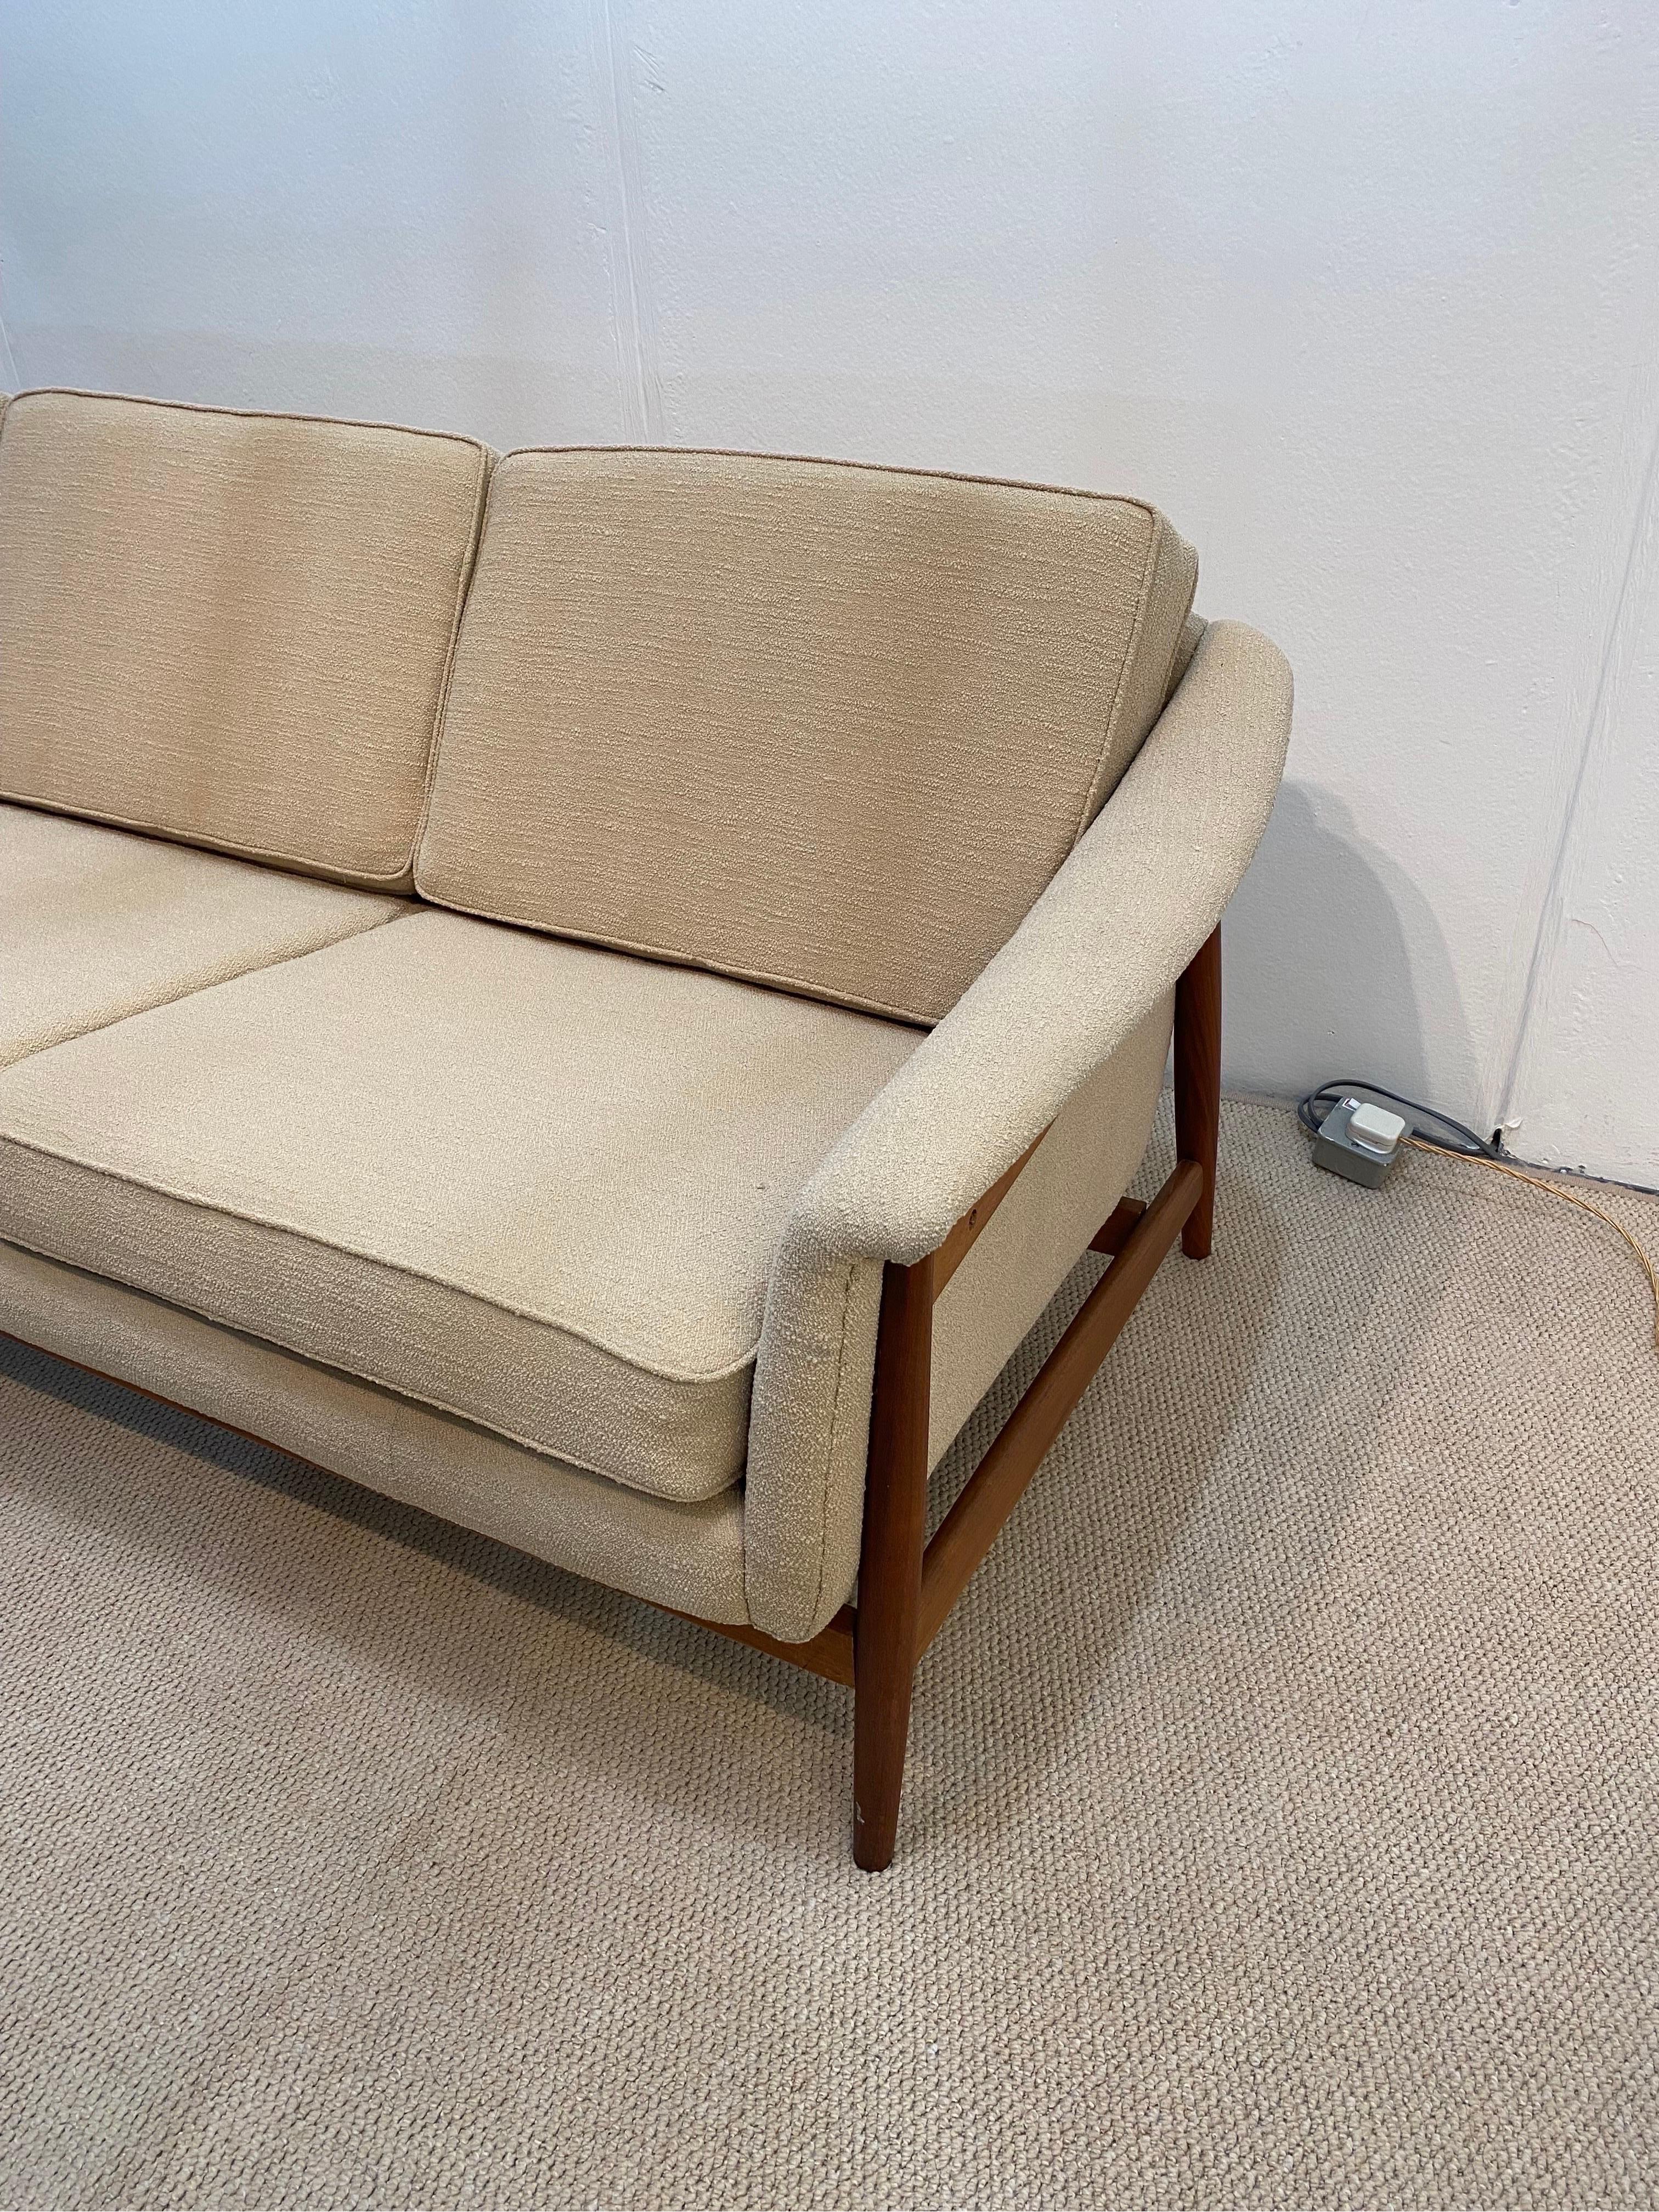 Folke Ohlsson for Dux Sweden Mid Century Modern Sofa 1960s Boucle  2